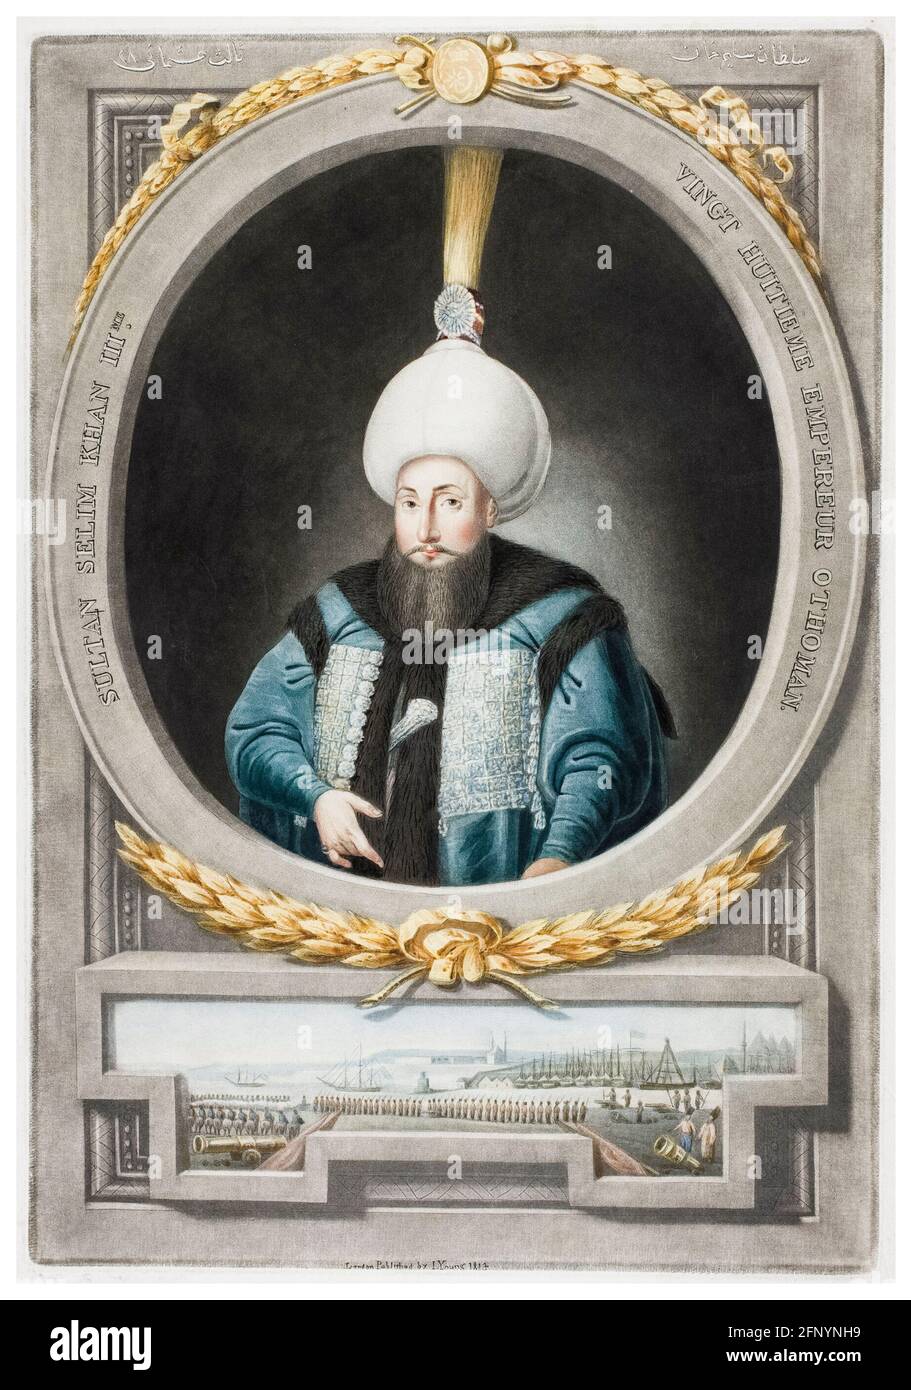 Selim III de Turquie (1761-1808), 28e sultan de l'Empire ottoman (1789-1807), portrait gravé par John Young, 1815 Banque D'Images